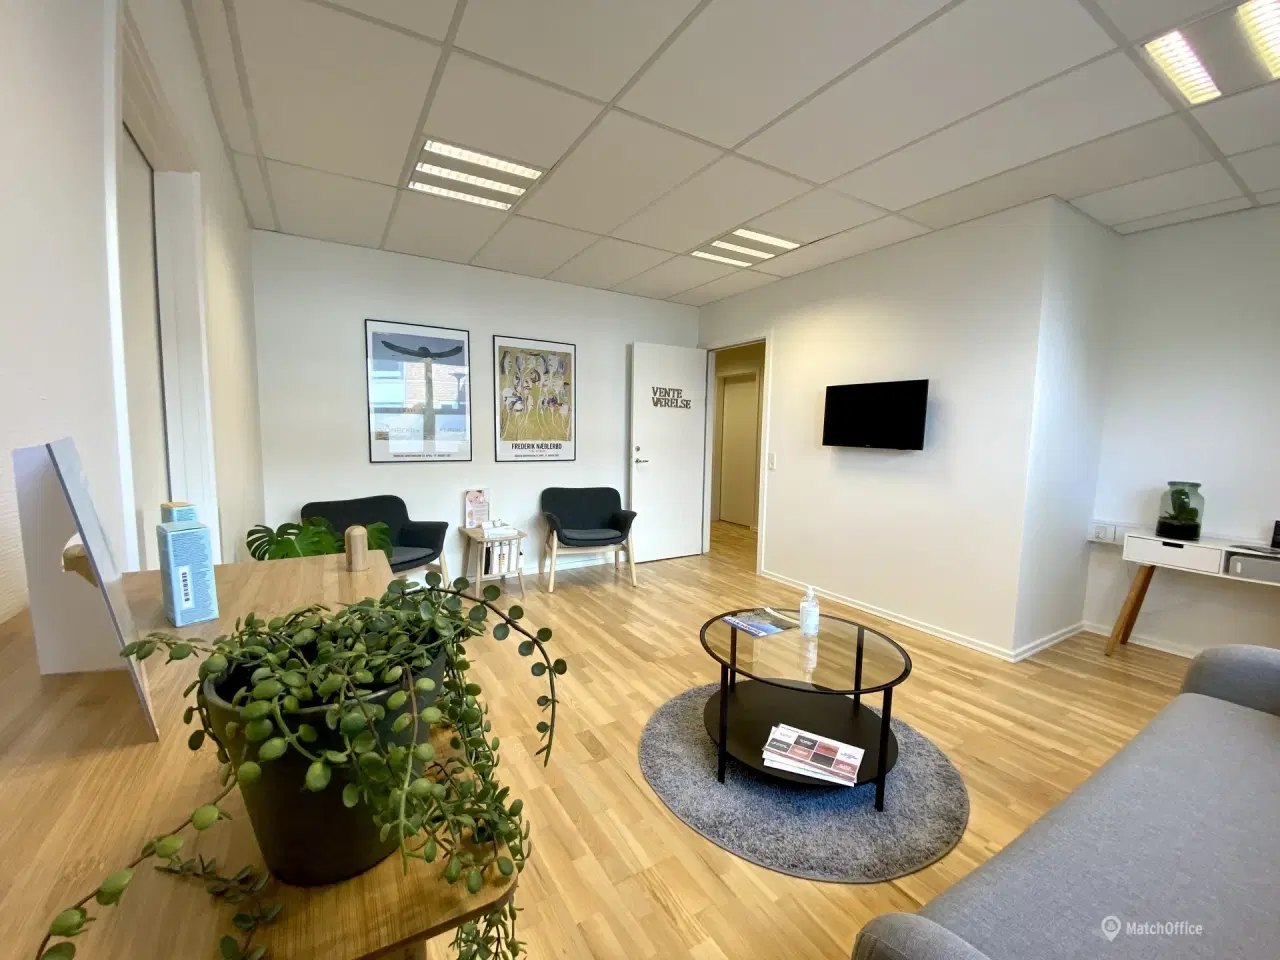 Billede 2 - 112 m² kontor/klinik lokale i velplaceret ejendom i Middelfart